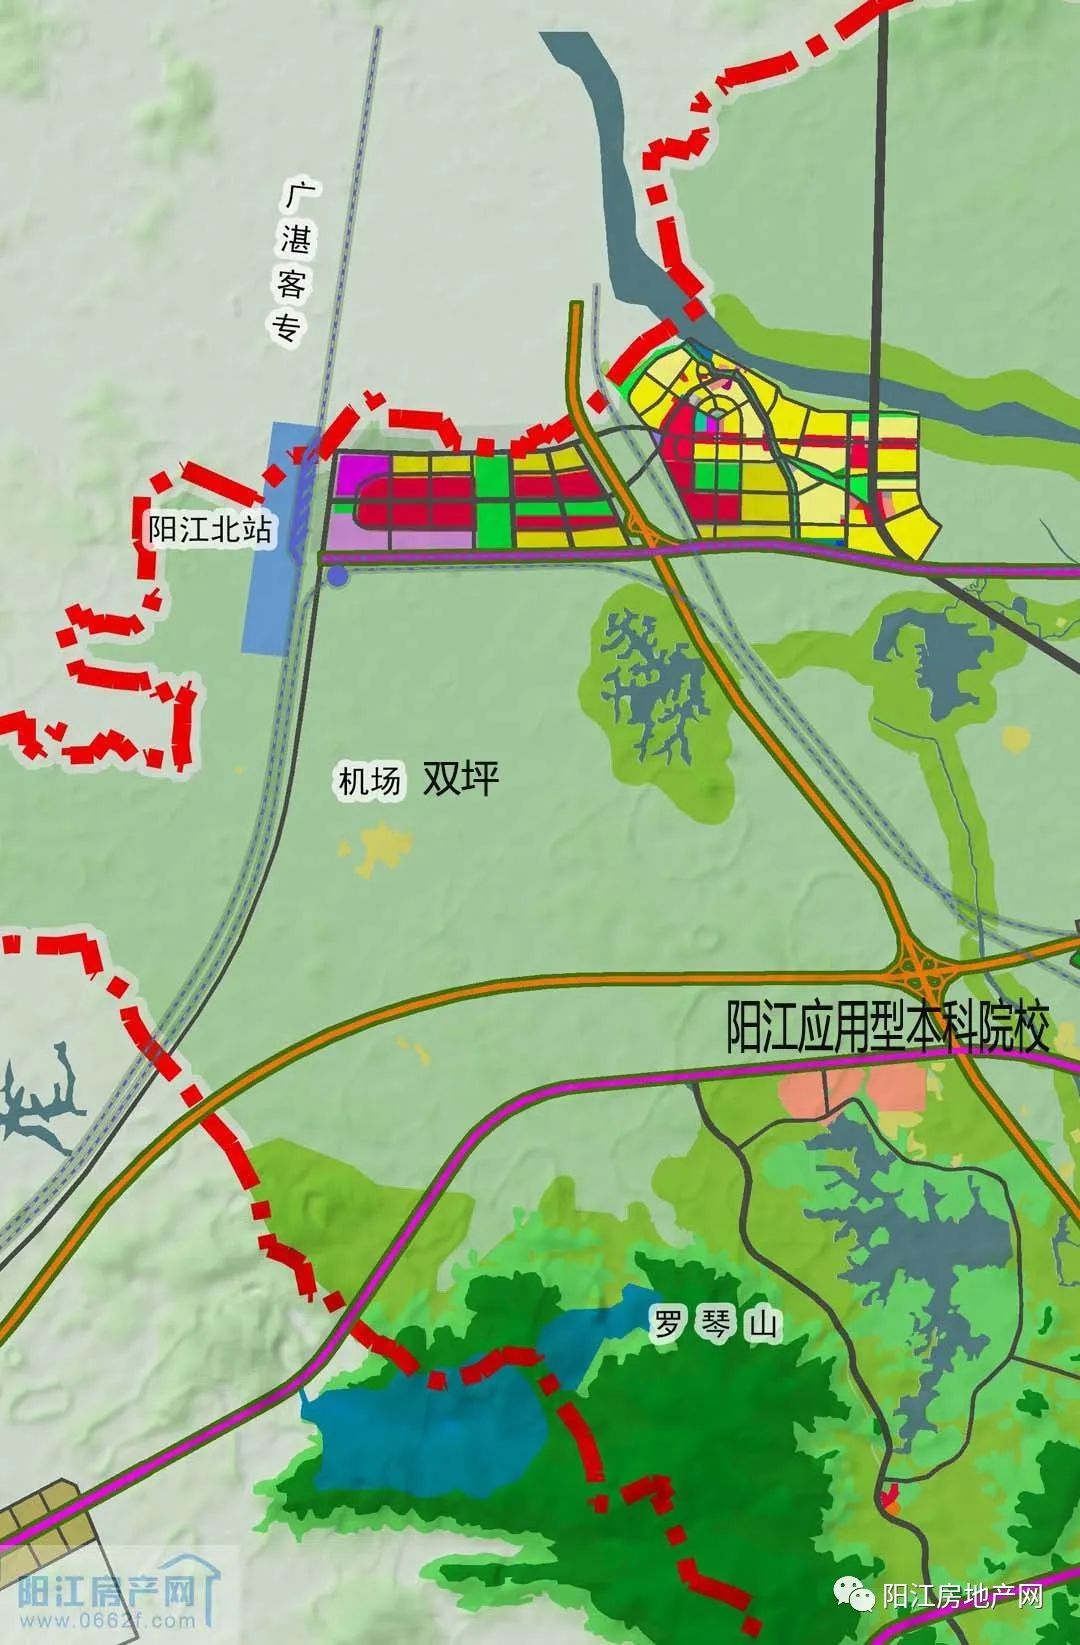 【关注】阳江市城市总体规划(2016-2035年)新鲜出炉,快看看有哪些